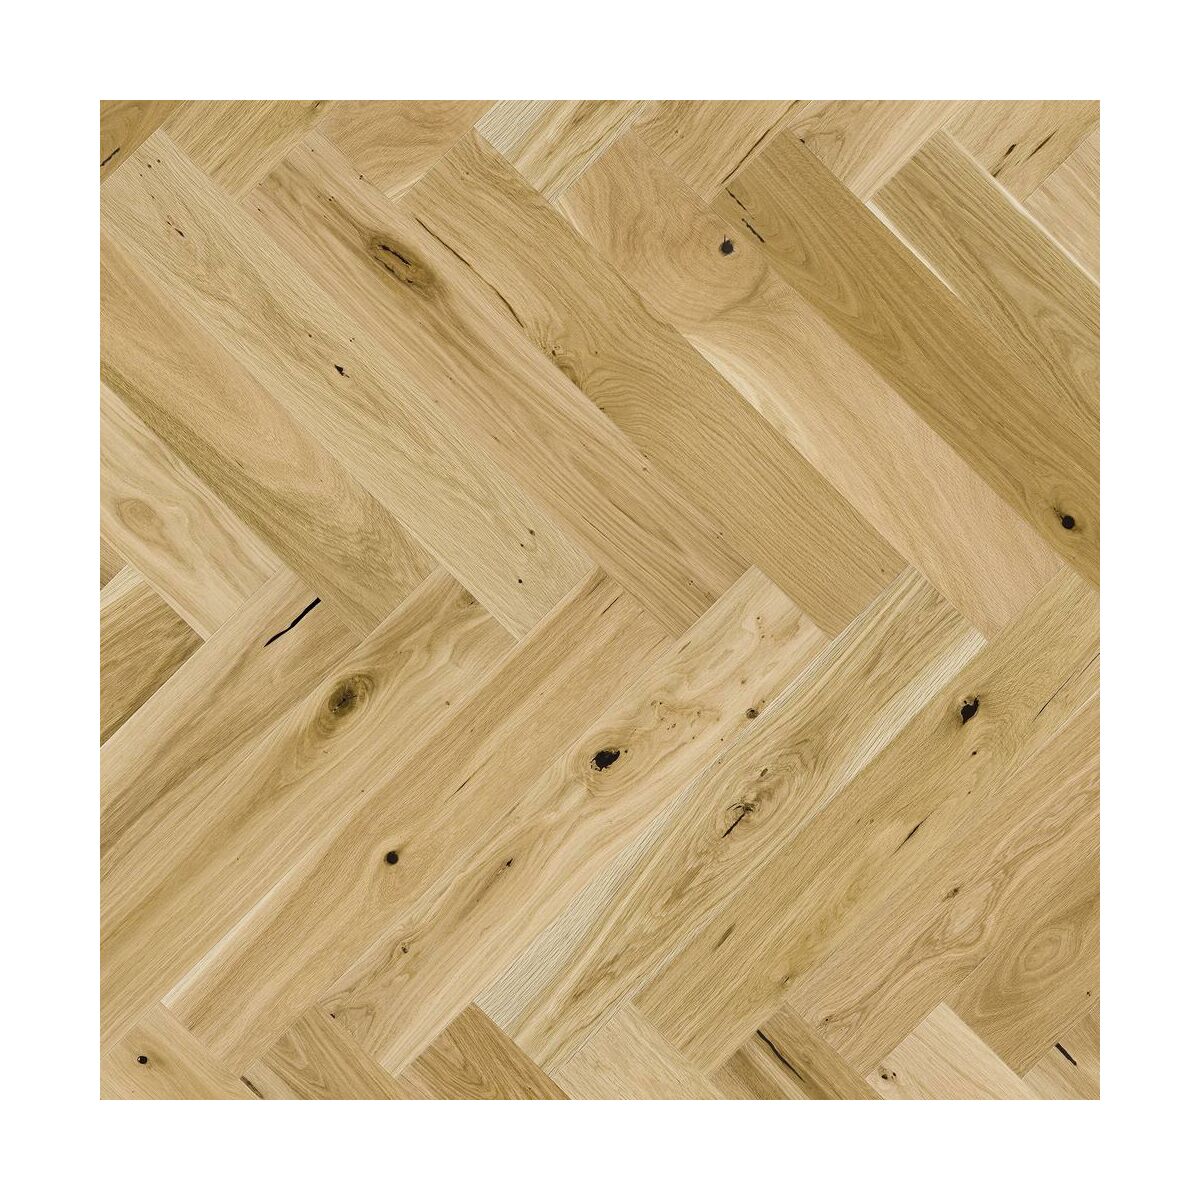 Podłoga drewniana deska trójwarstwowa jodełka klasyczna dąb country olejowana 1-lamelowa 14 mm Barlinek